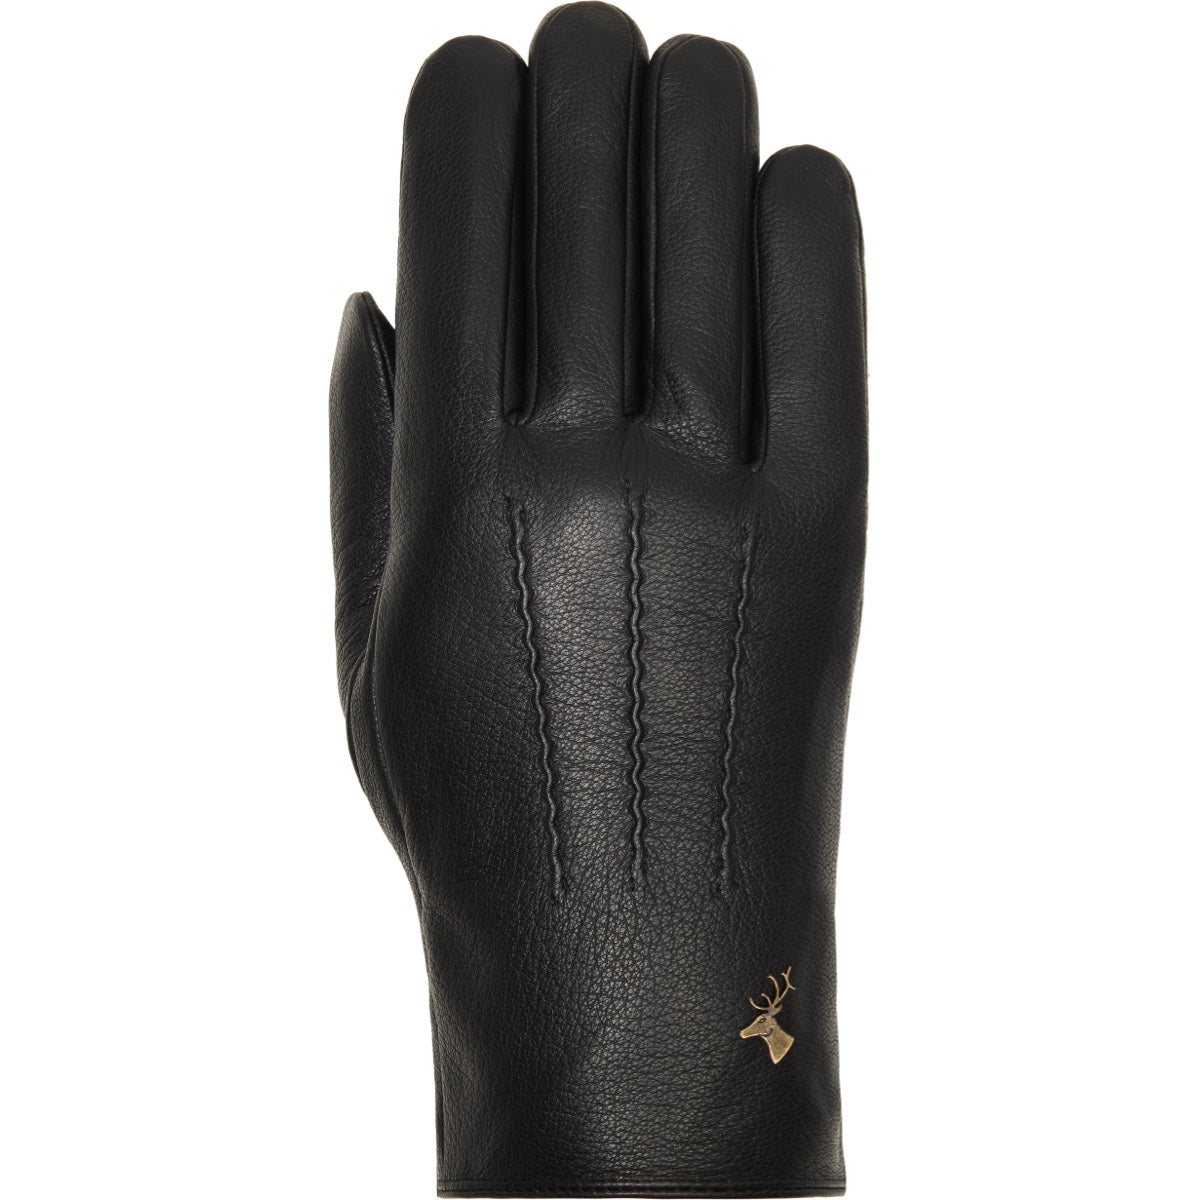 Black Leather Gloves Men Jaxon - Schwartz & von Halen® - Premium Leather Gloves - 1